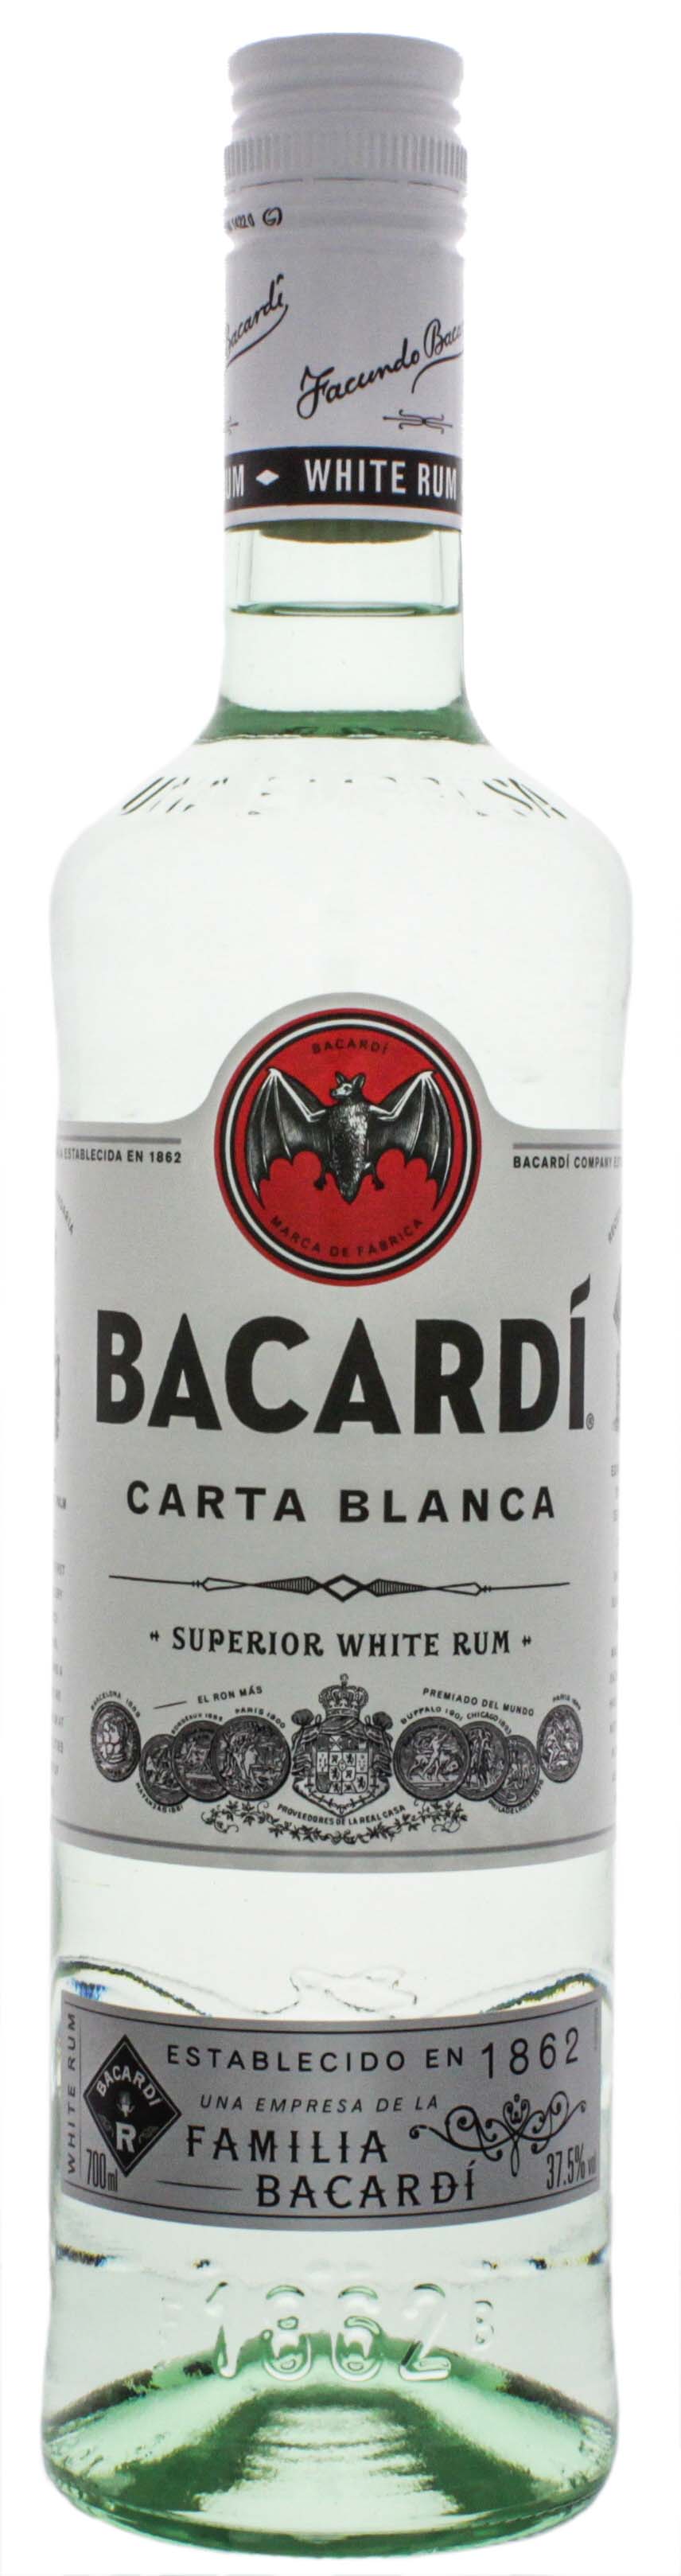 Bacardi Rum Carta Blanca 0,7L jetzt kaufen! Rum Online Shop & Spirituosen